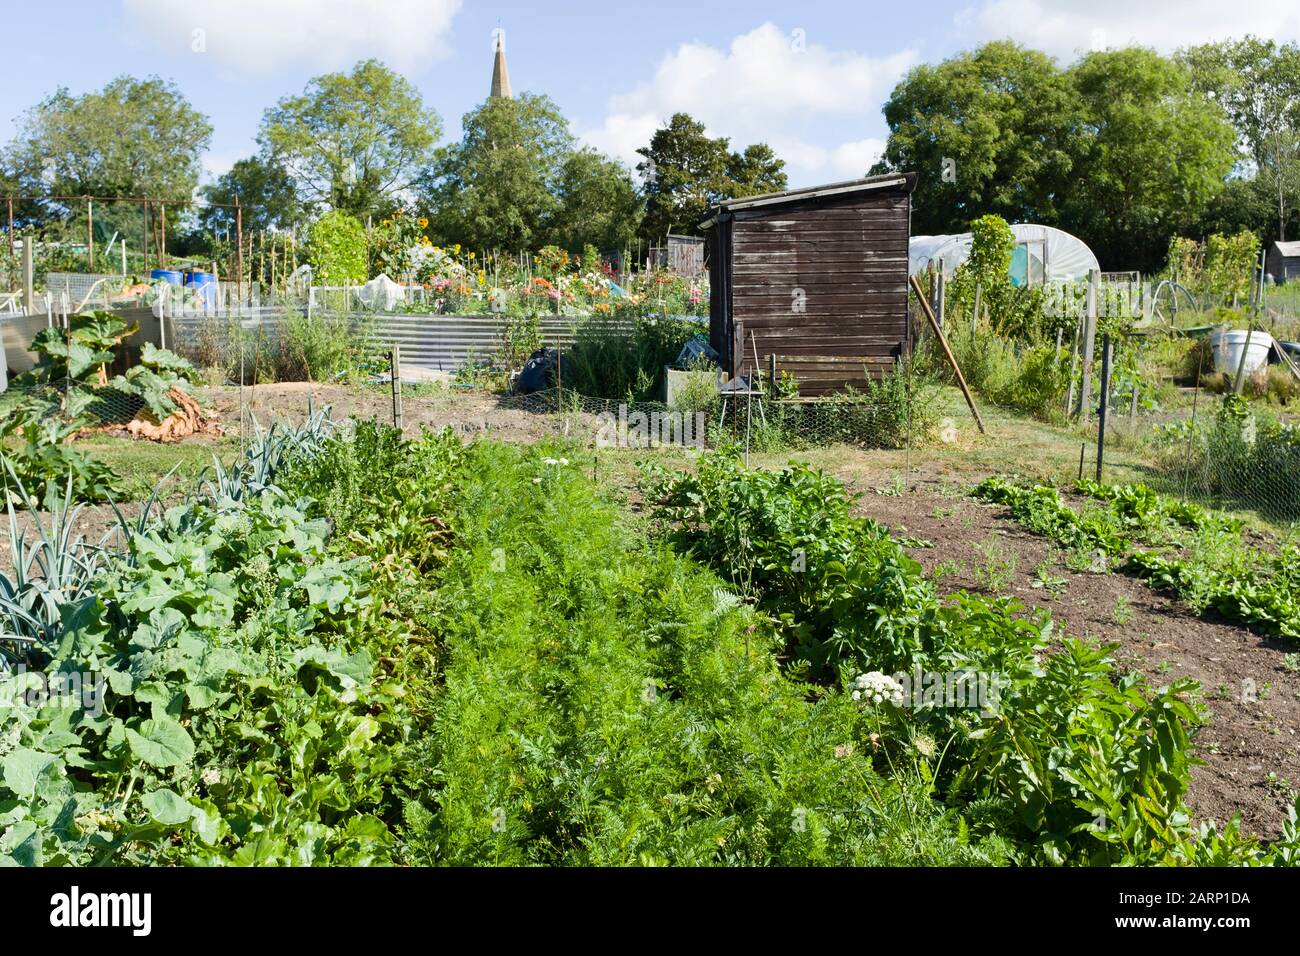 Cultiver des légumes dans les allotissements, les jardins communautaires en Angleterre, au Royaume-Uni Banque D'Images